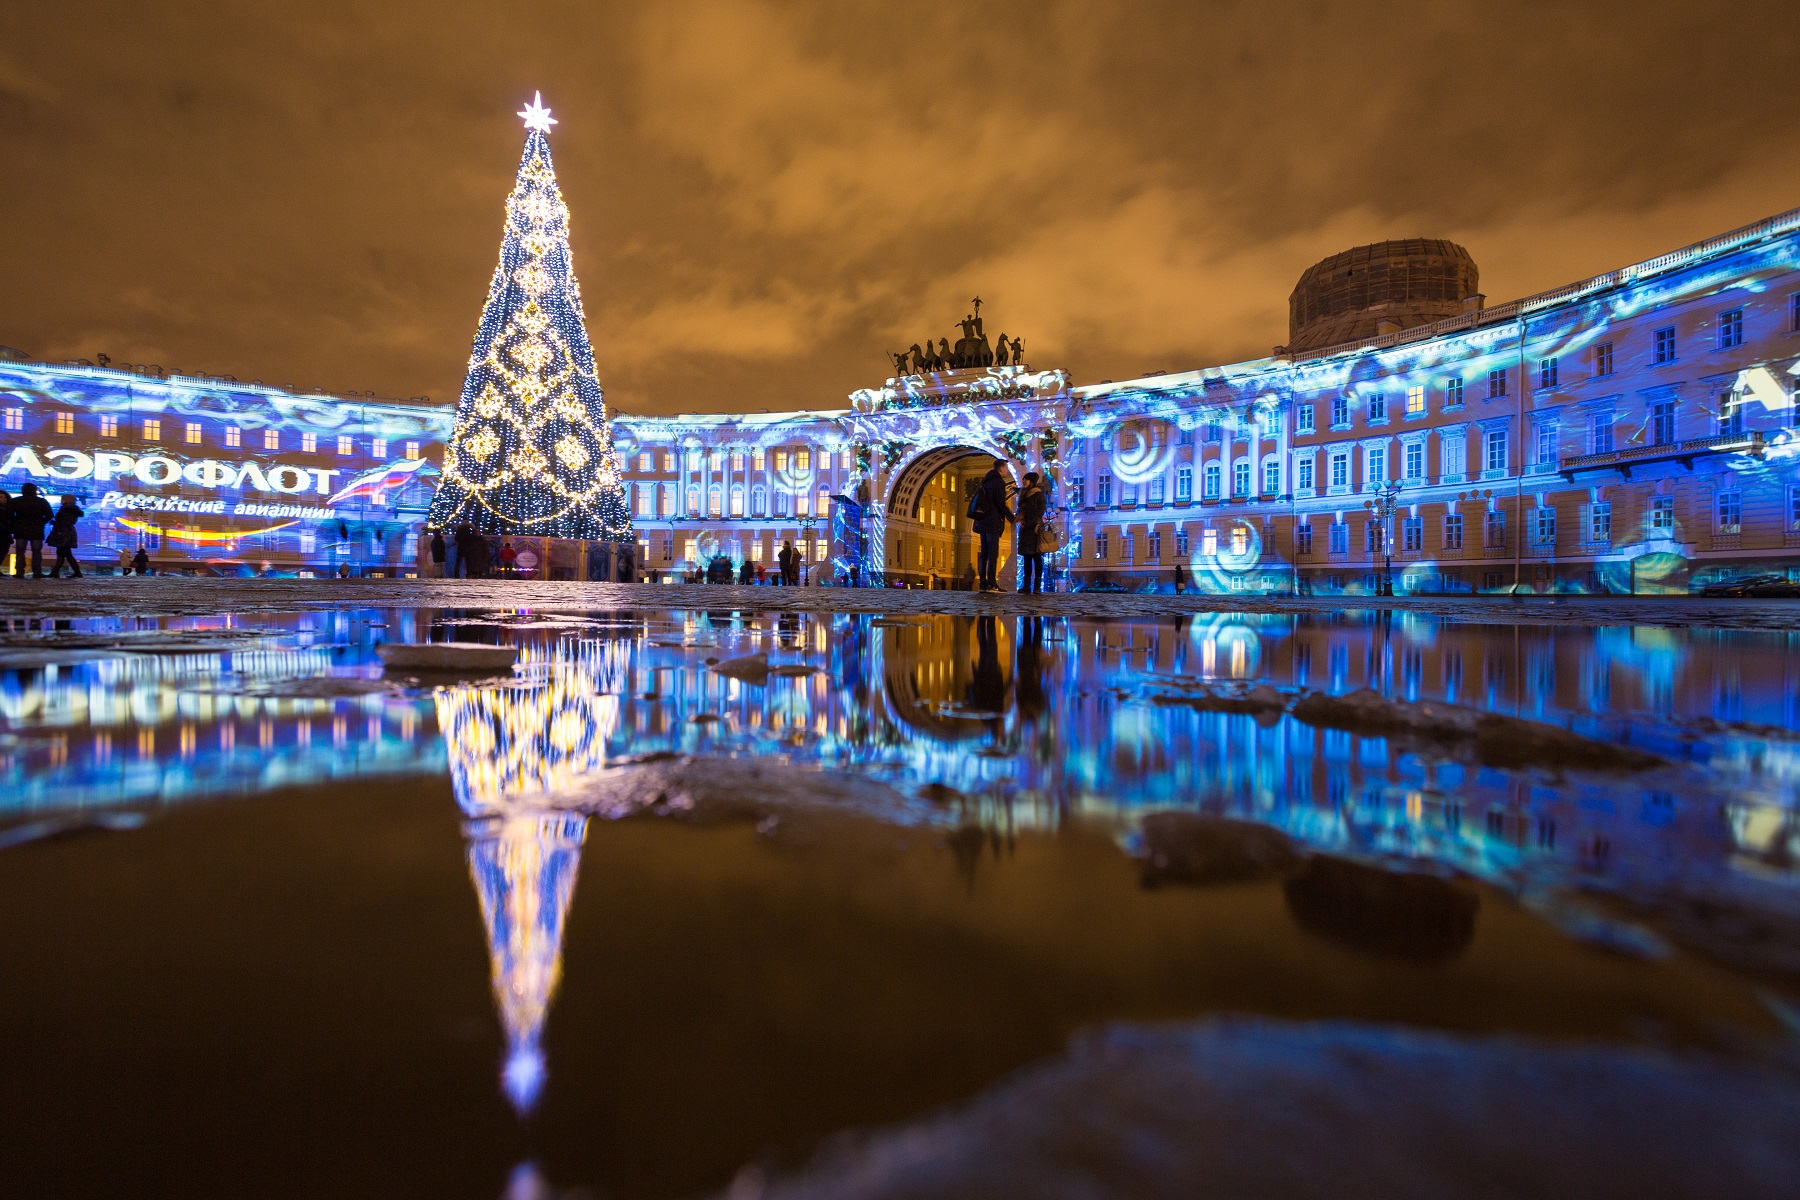 Новогодние туры в Санкт-Петербург